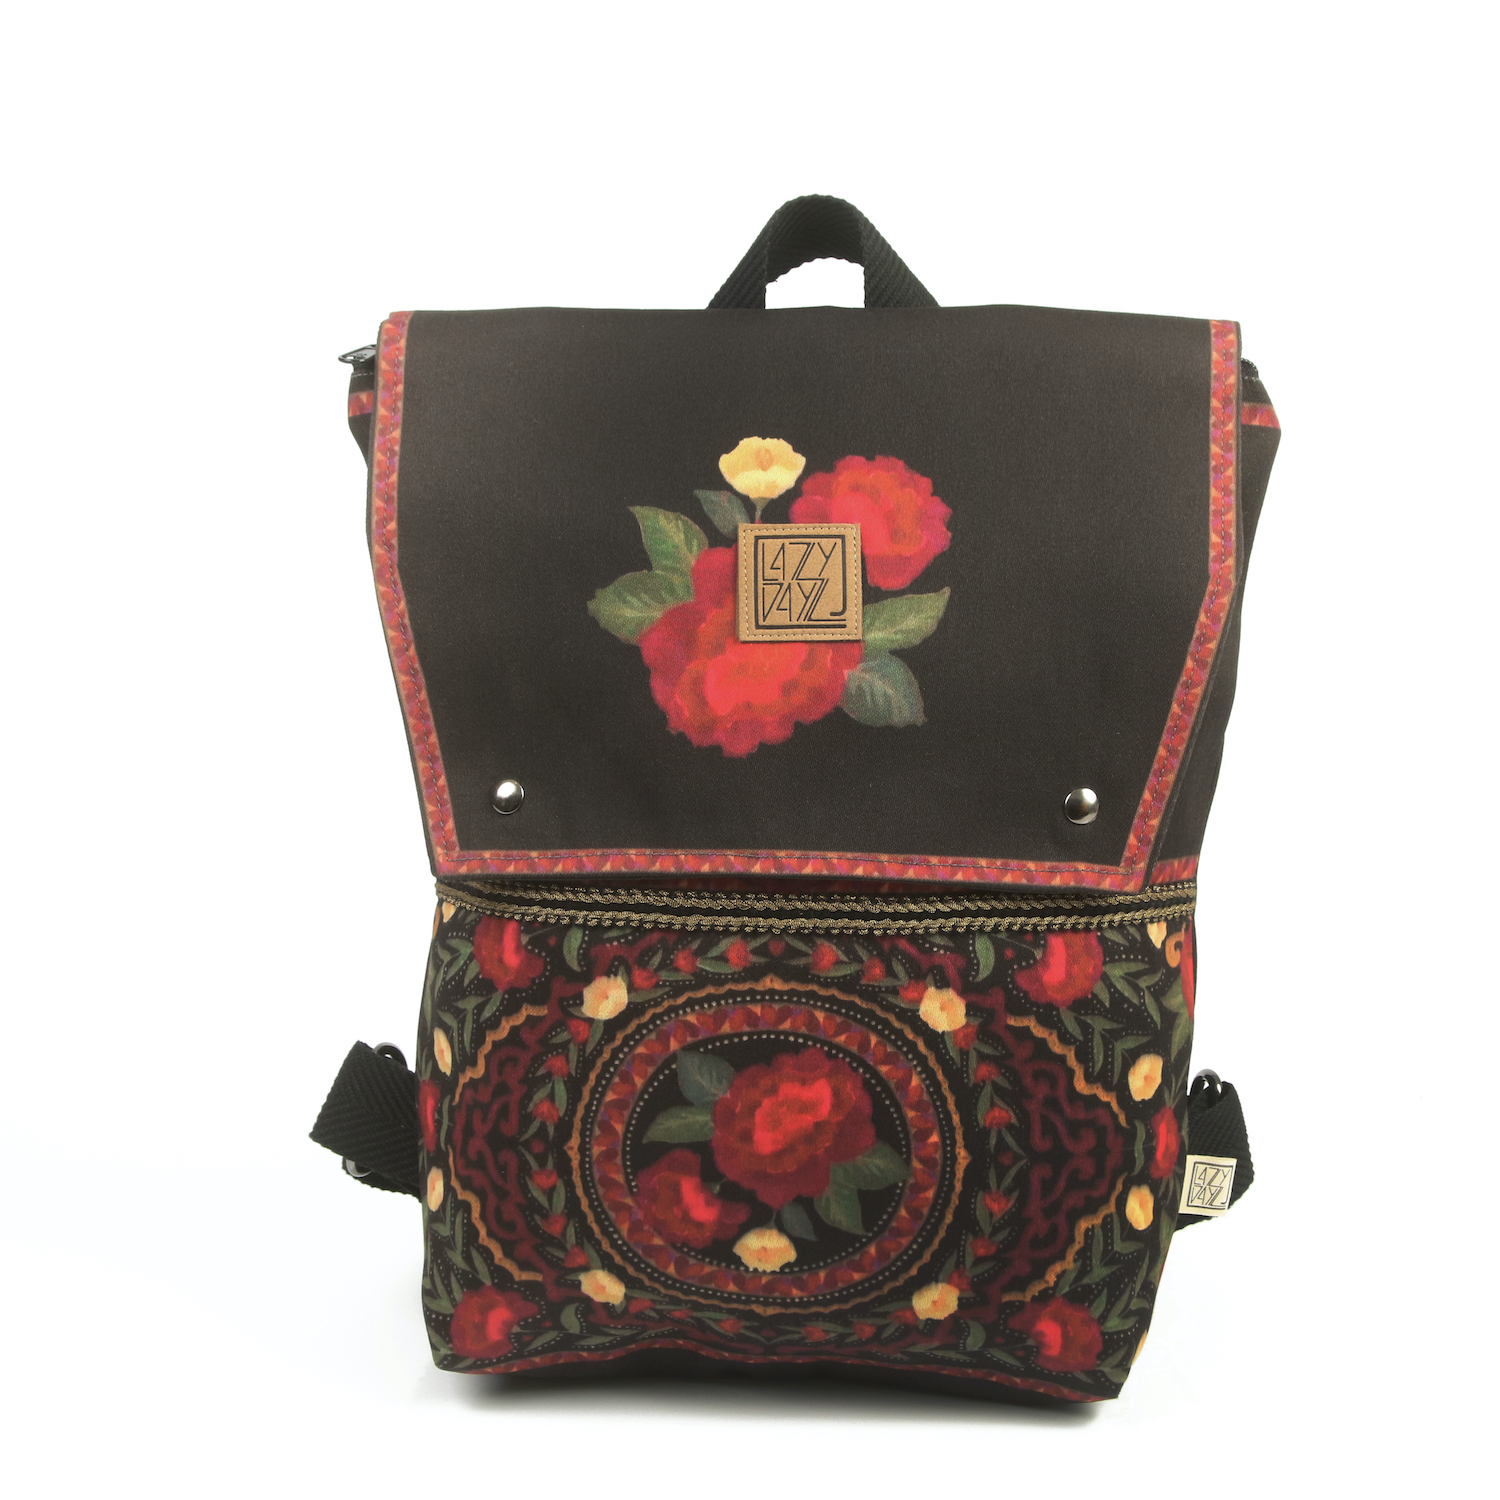 LazyDayz-Designs-Backpack-γυναικείος-σάκος-πλάτης-χειροποίητος bb0703